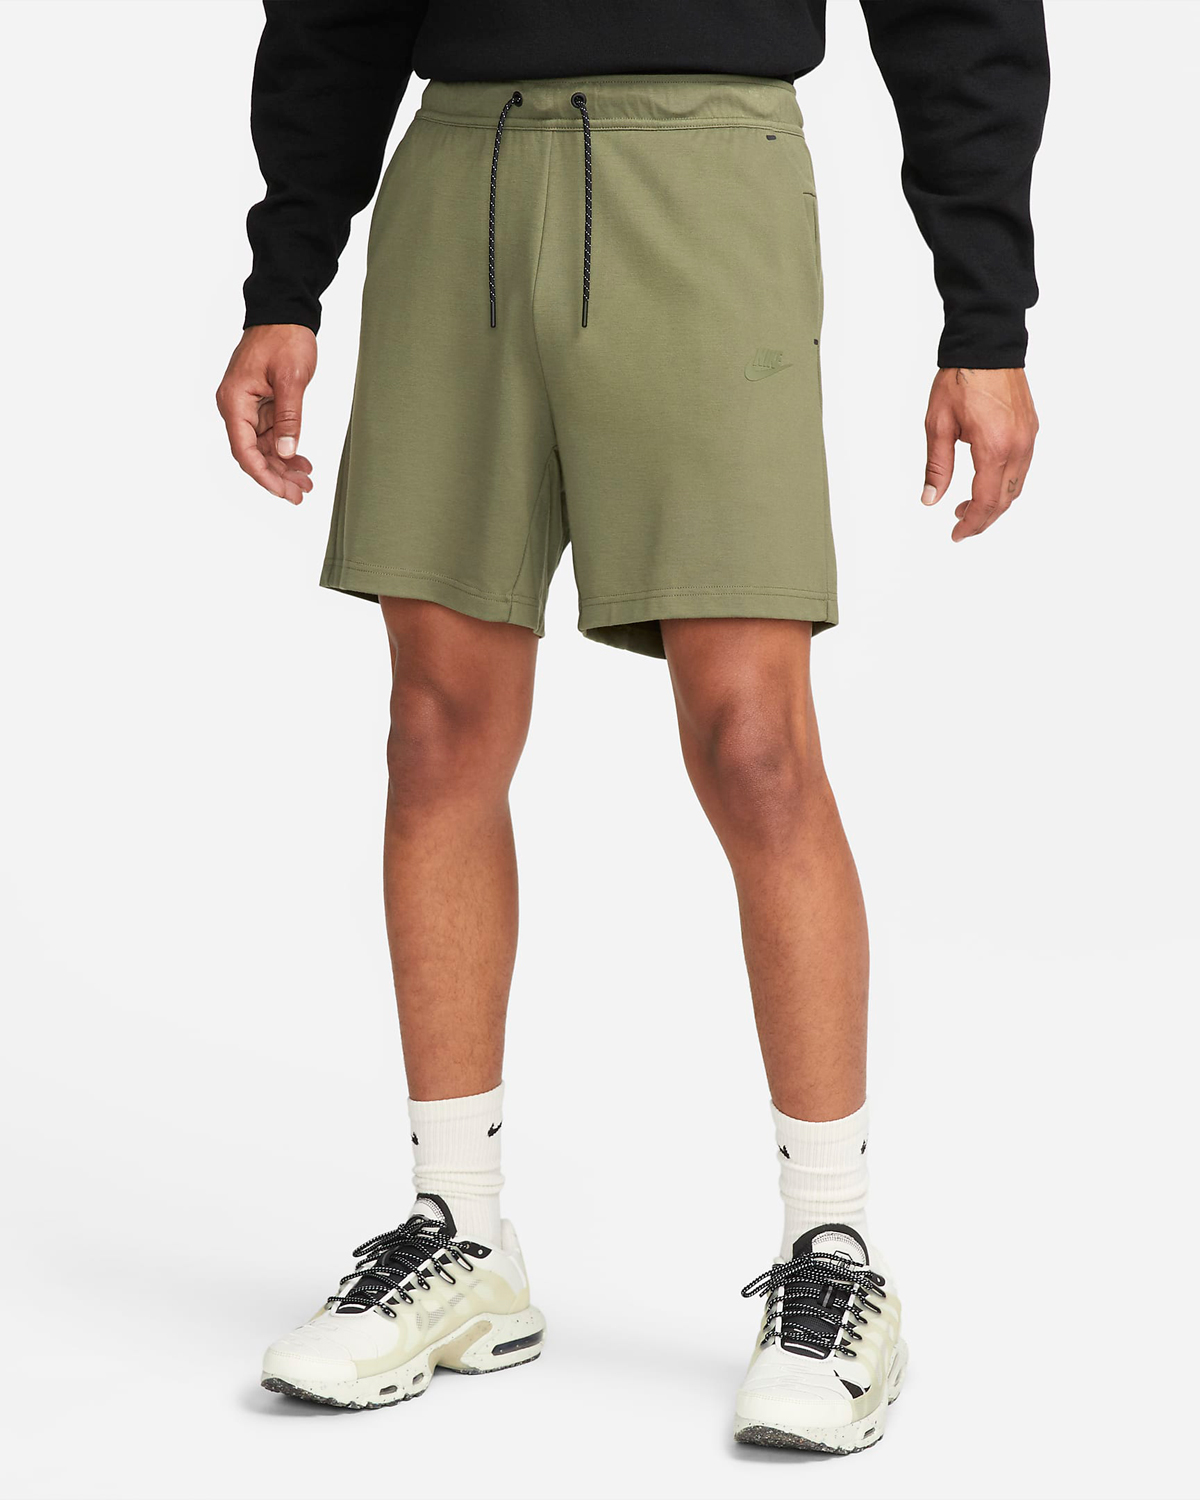 Nike-Tech-Fleece-Lightweight-Shorts-Medium-Olive